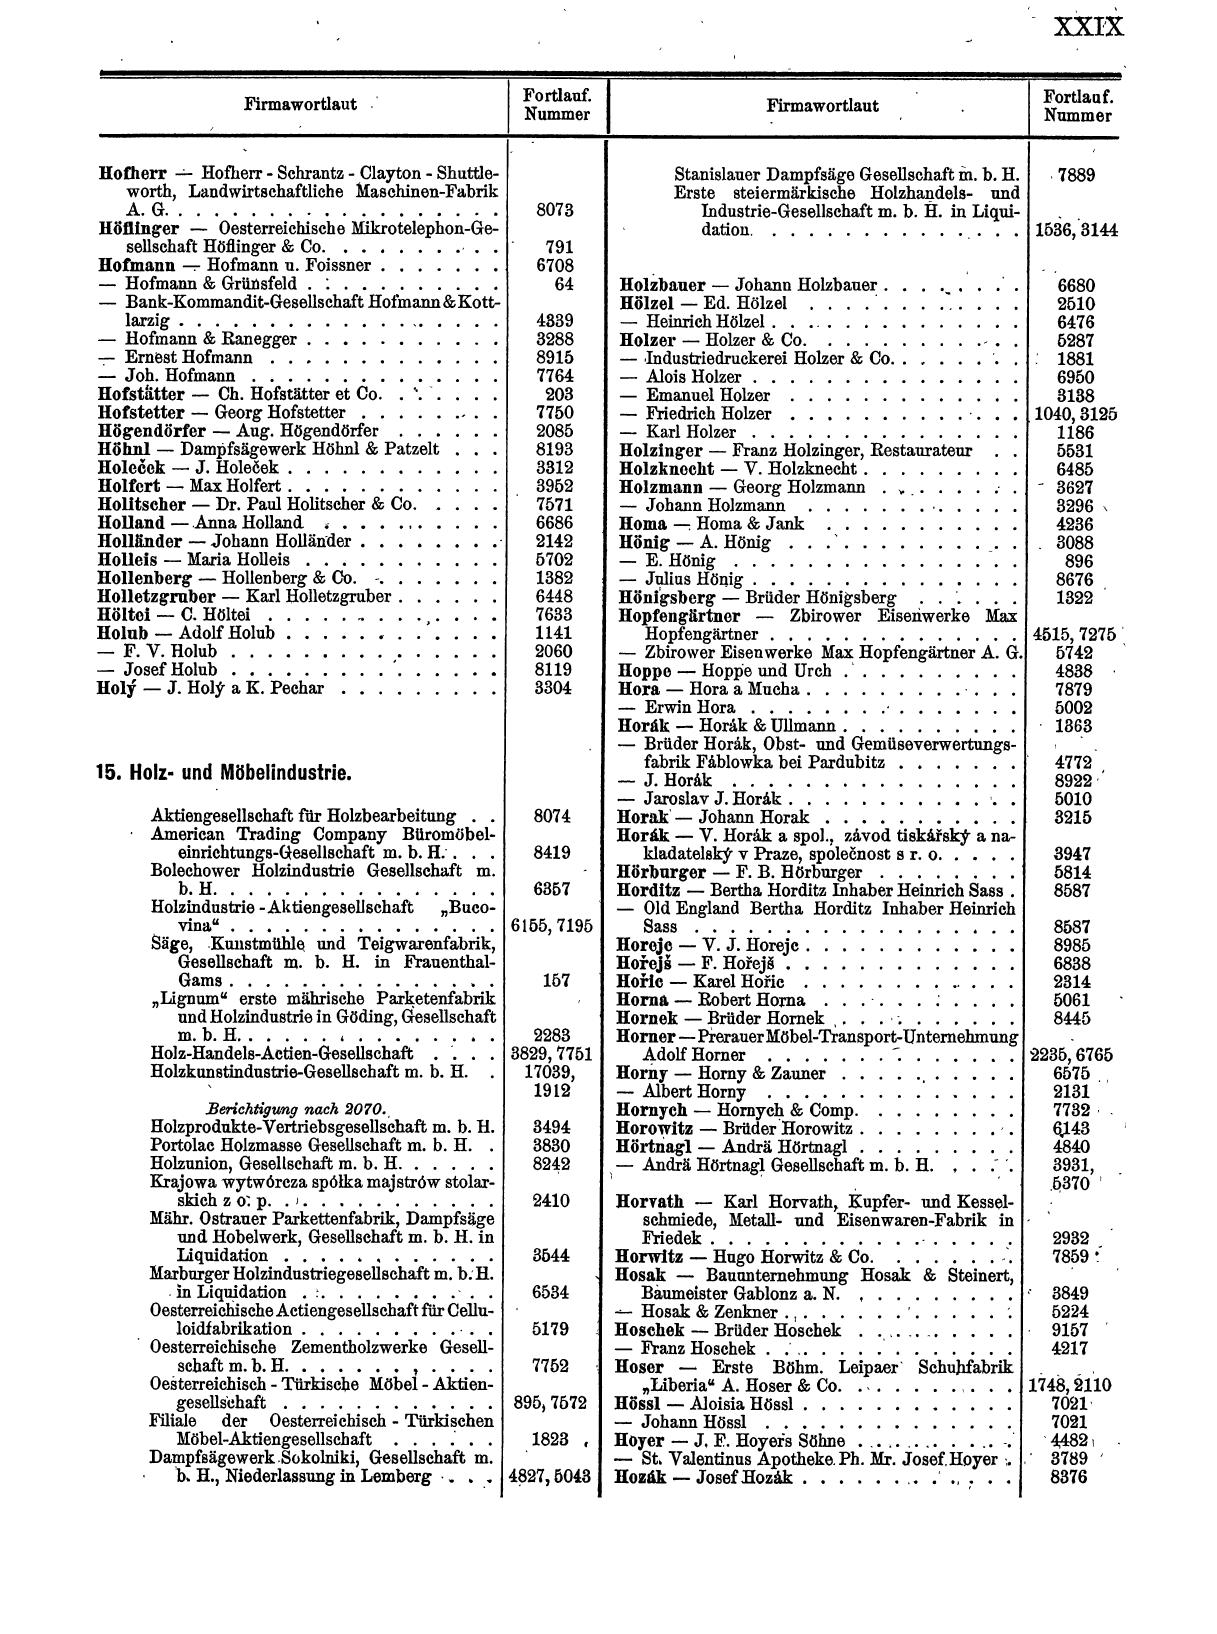 Zentralblatt für die Eintragungen in das Handelsregister 1913, Teil 1 - Seite 37